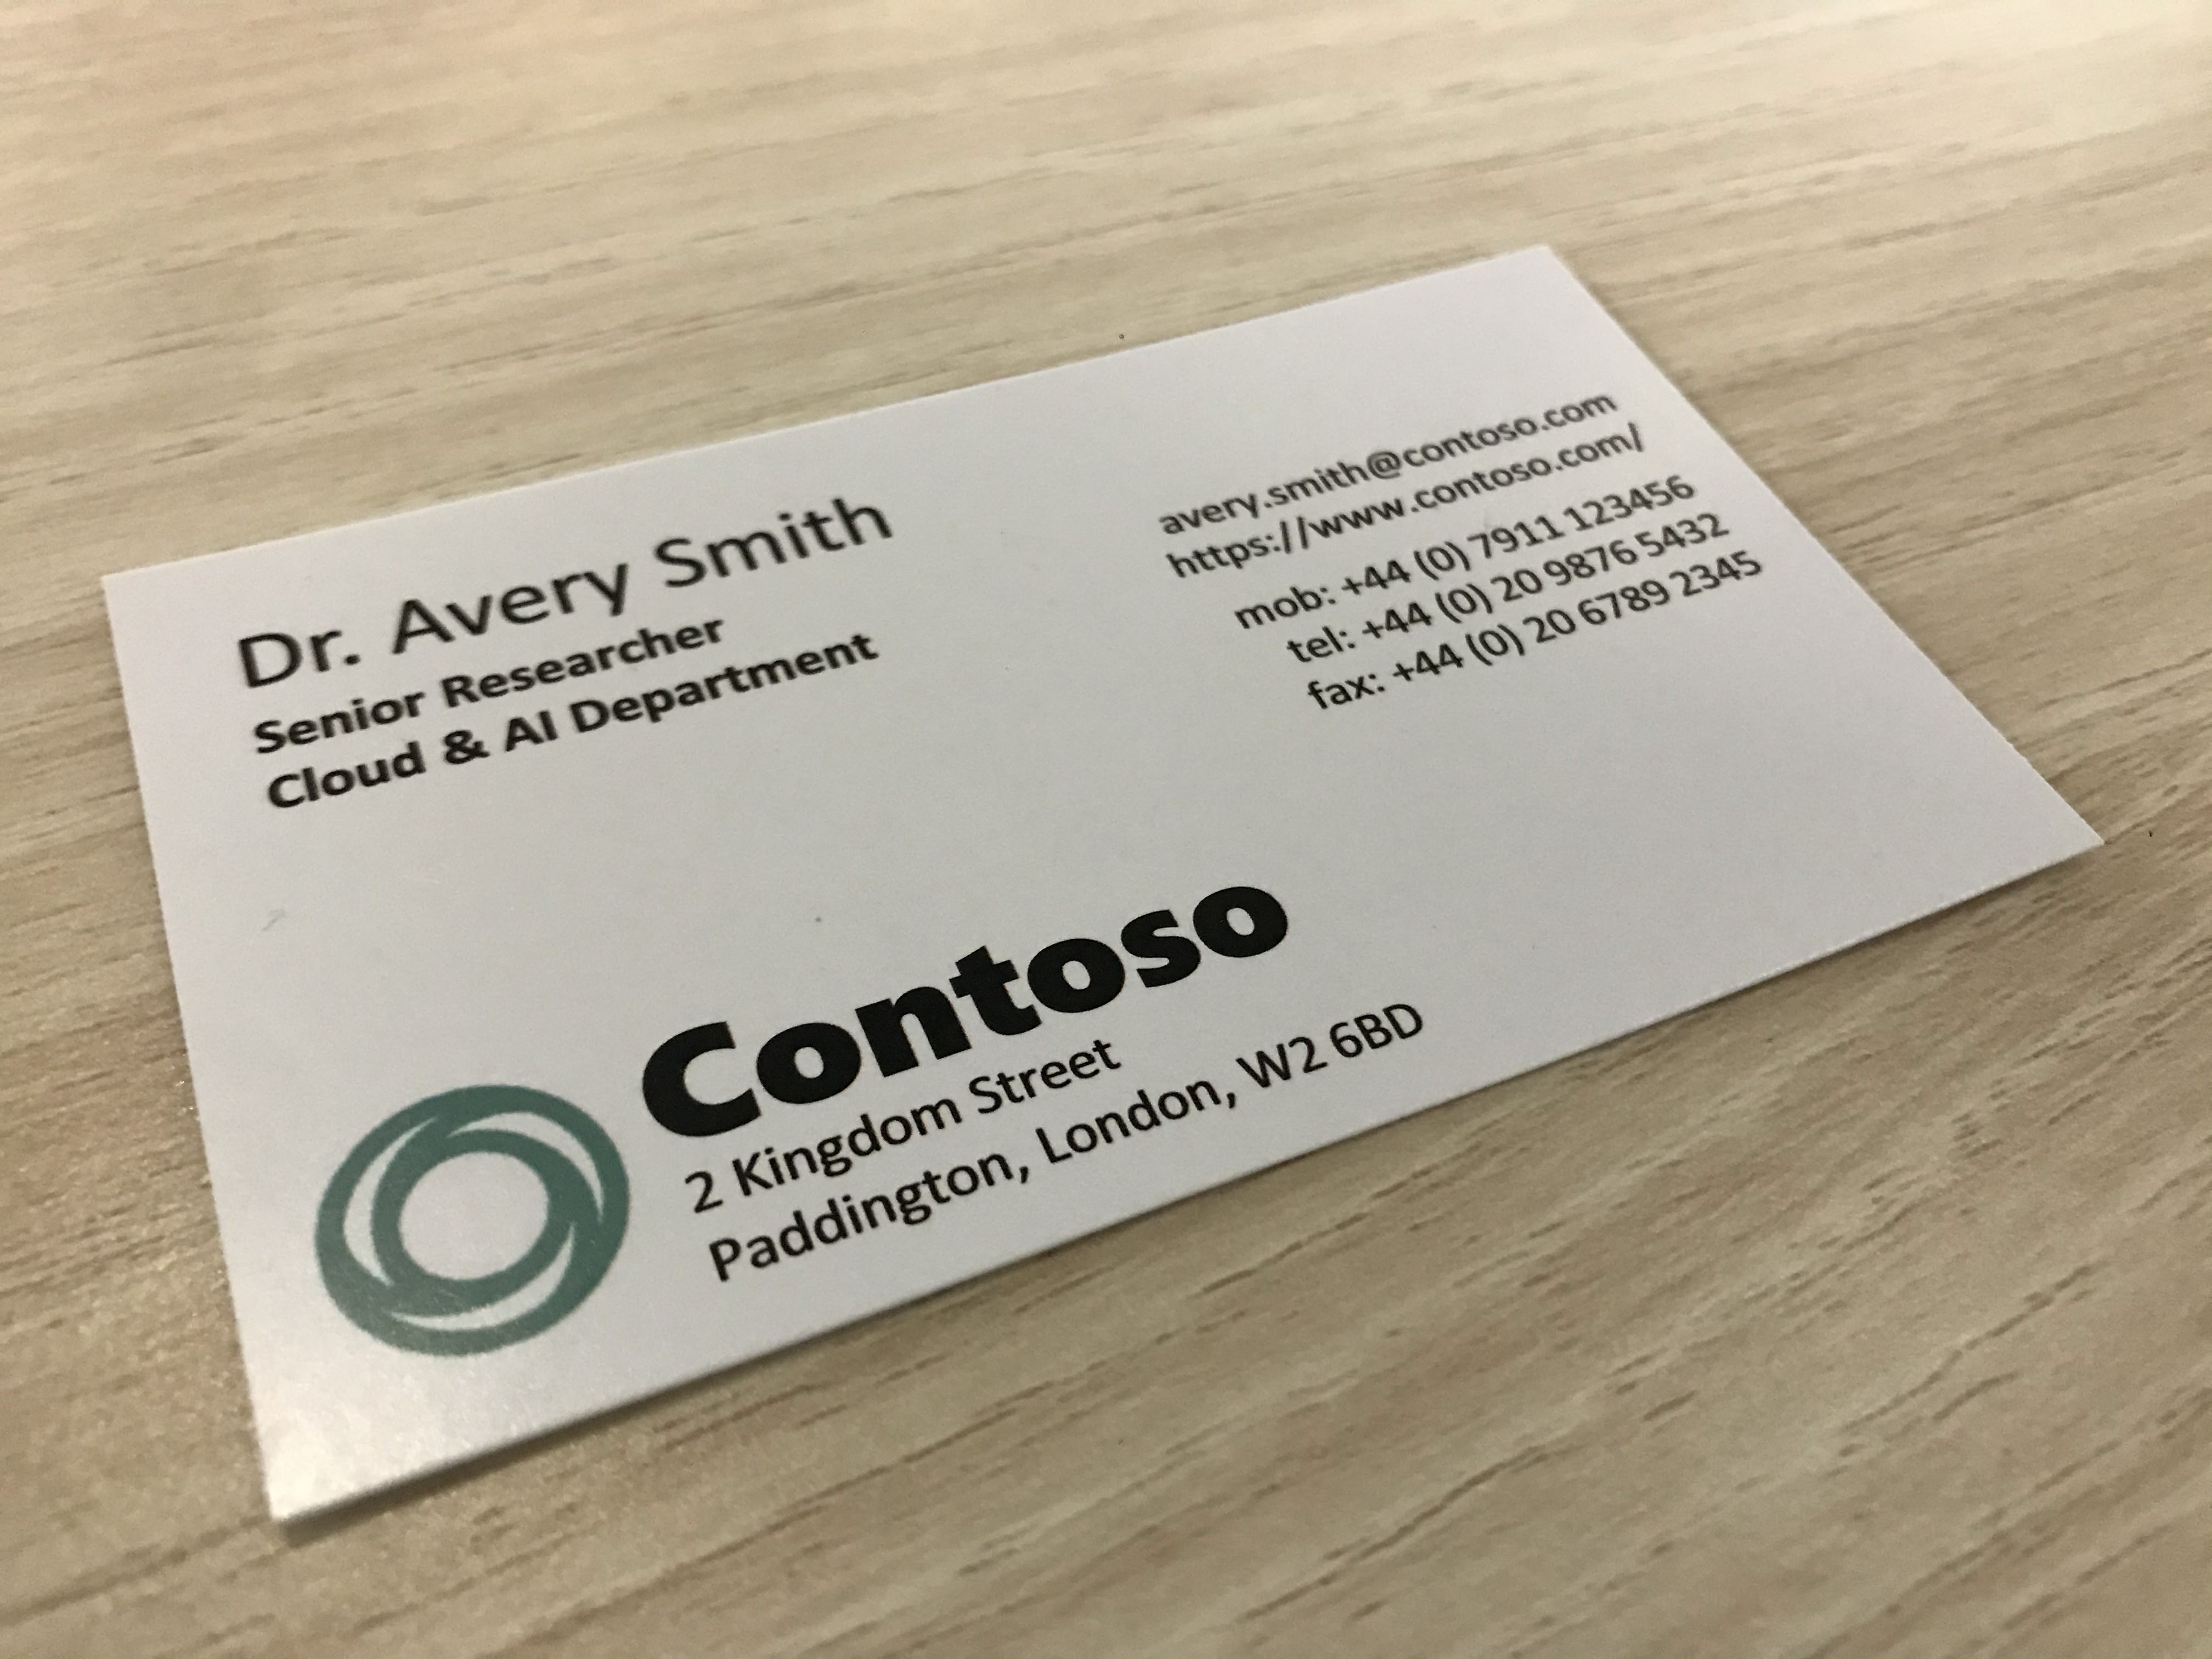 Photographie montrant une carte de visite d’une entreprise appelée Contoso.